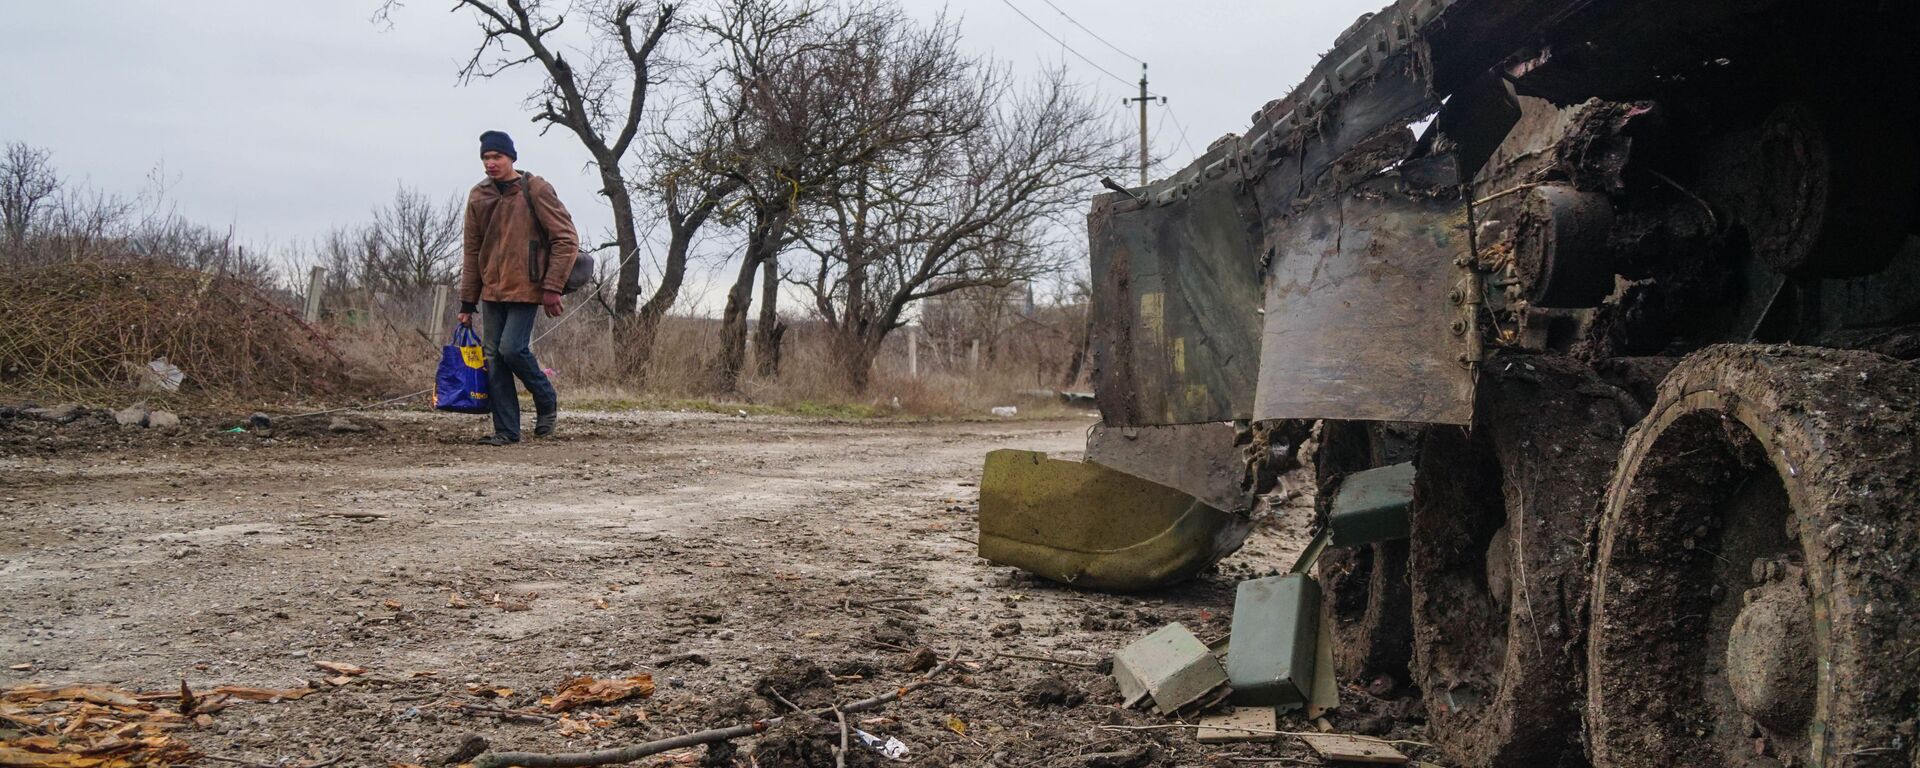 Một cư dân làng Gnutovo đi ngang qua chiếc xe tăng của quân đội Ukraina bị bắn cháy gần Mariupol - Sputnik Việt Nam, 1920, 20.03.2022